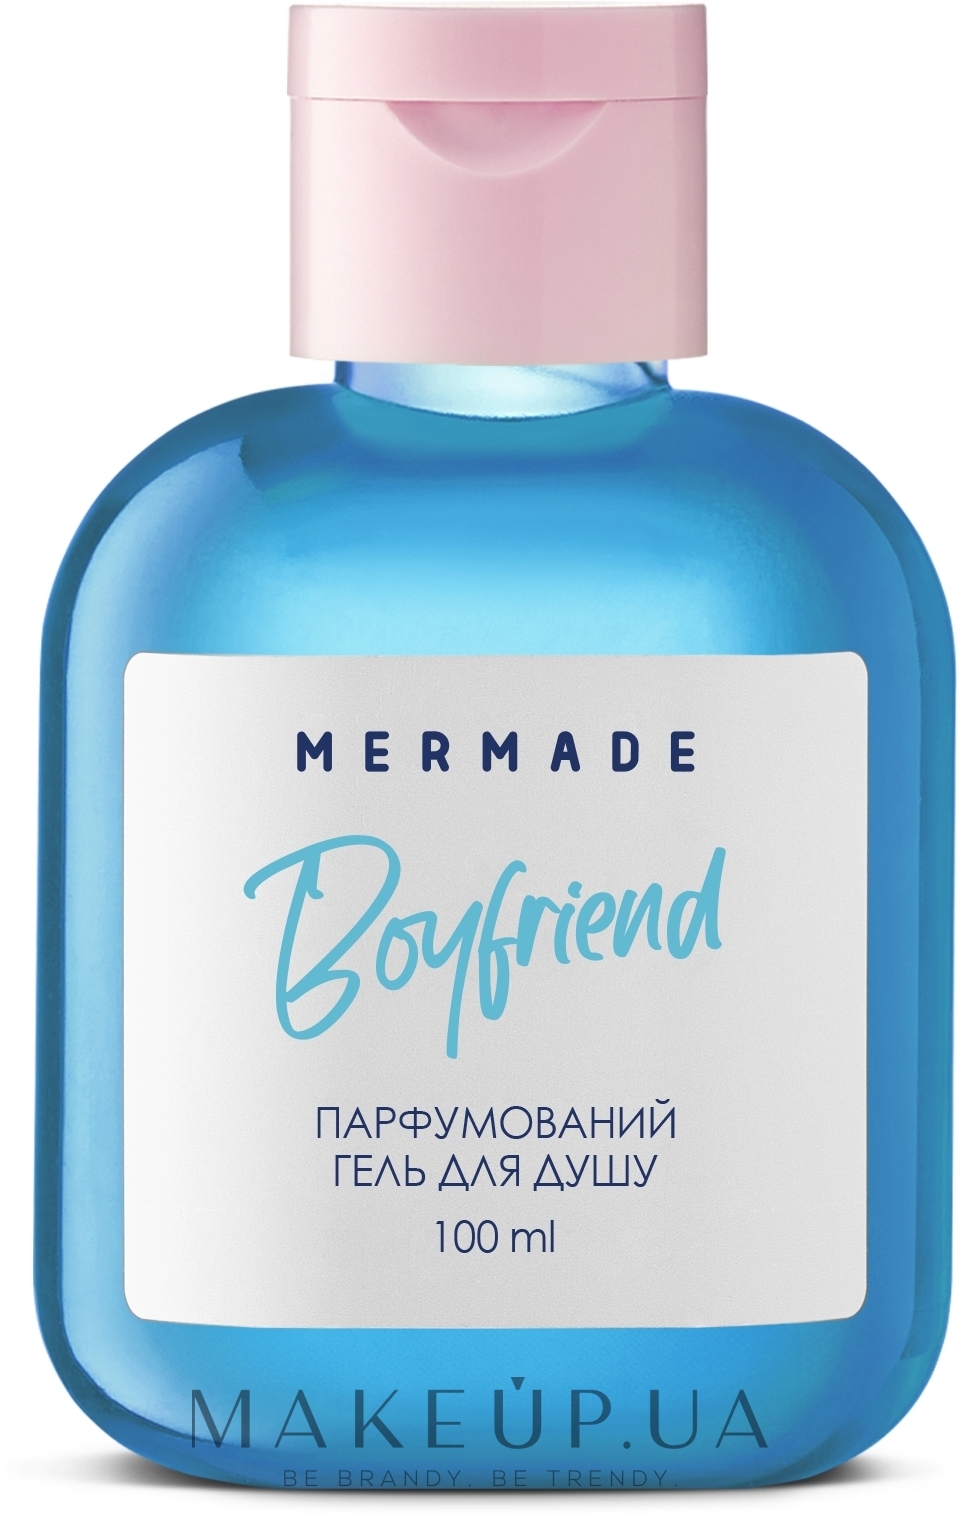 Mermade Boyfriend - Парфумований гель для душу — фото 100ml